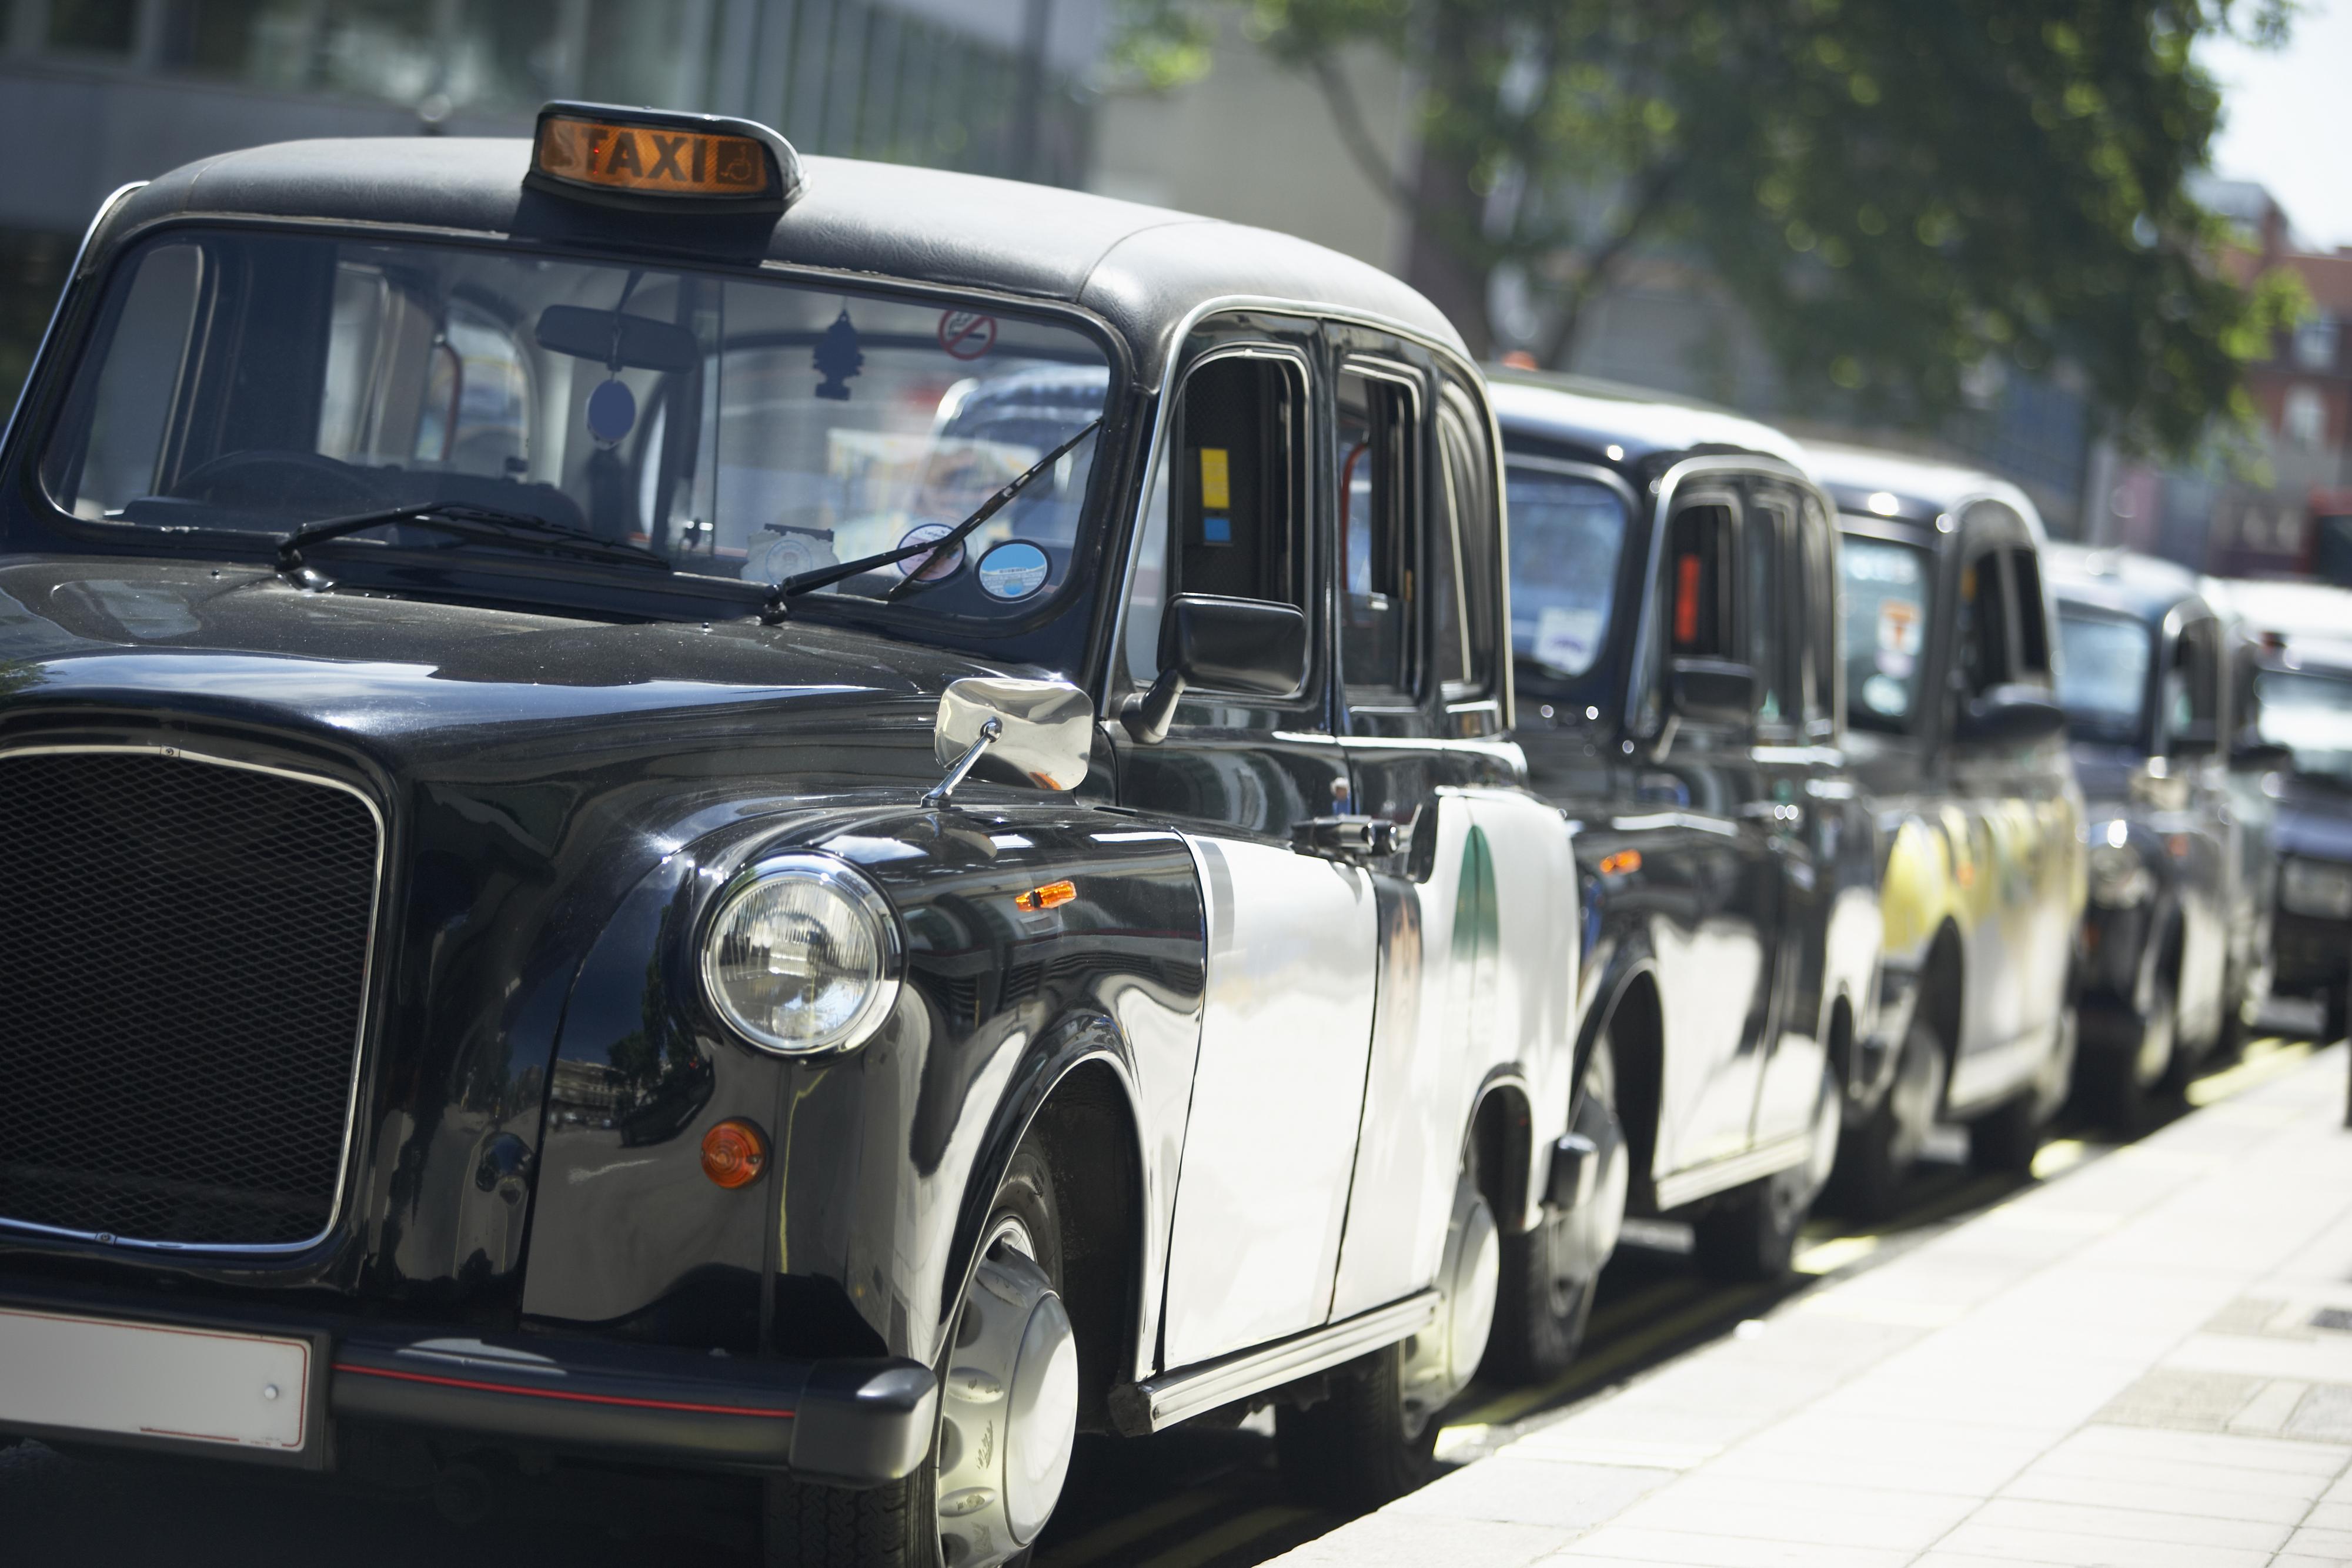 De tradisjonelle London-drosjene stod stille i protest mot Uber i juni.Foto: Monkey Business Images / Shutterstock.com